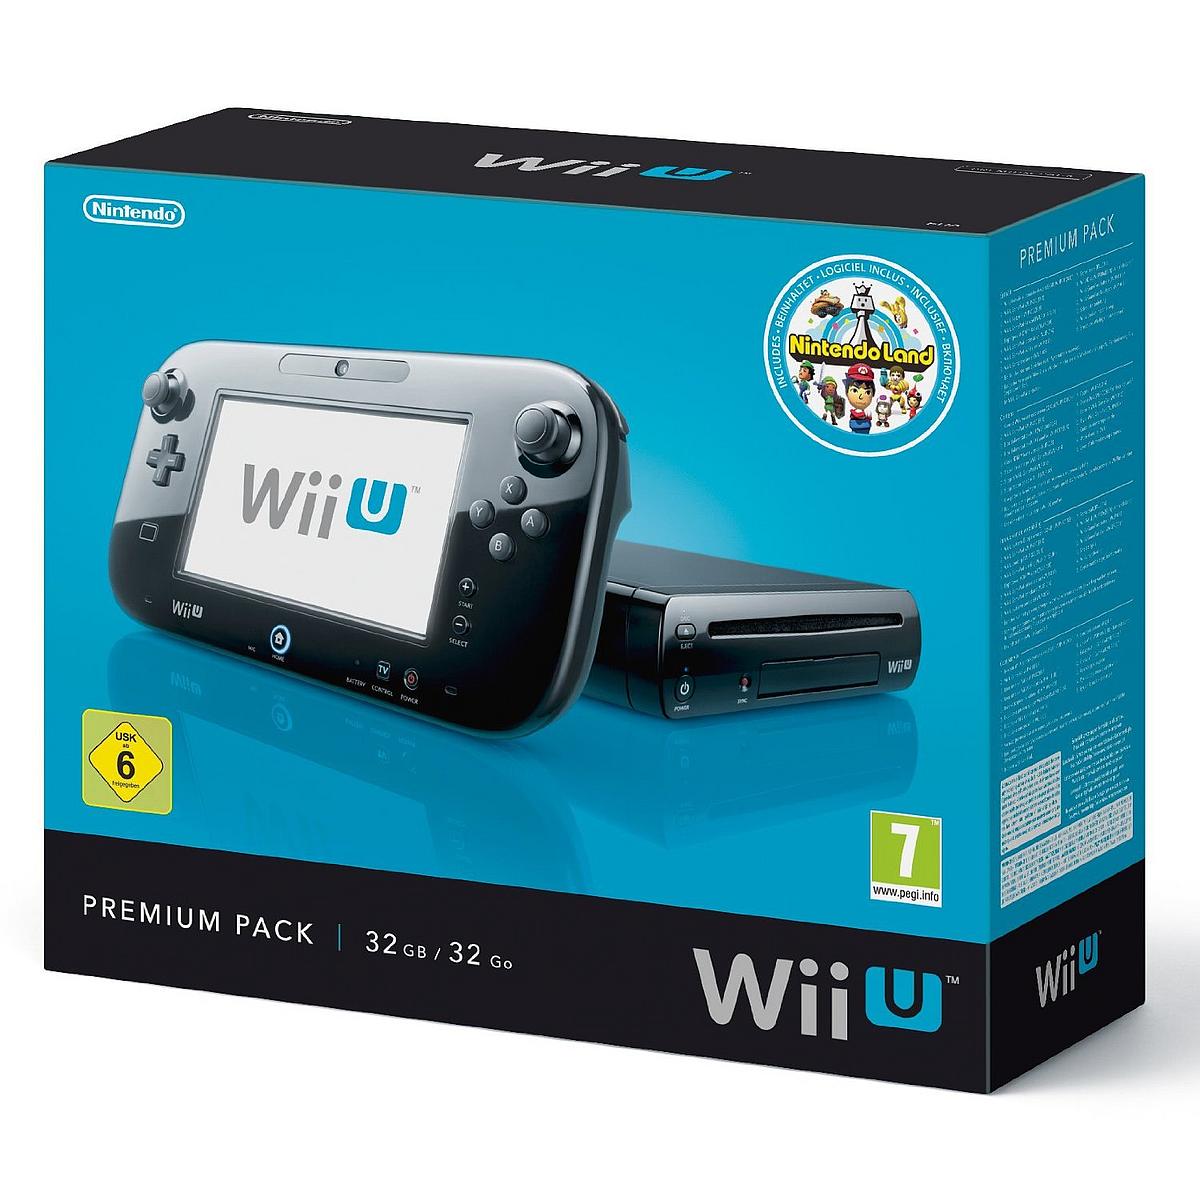 Wii U Verpackung mit schwarzem Wii U Controller und Konsole darauf.